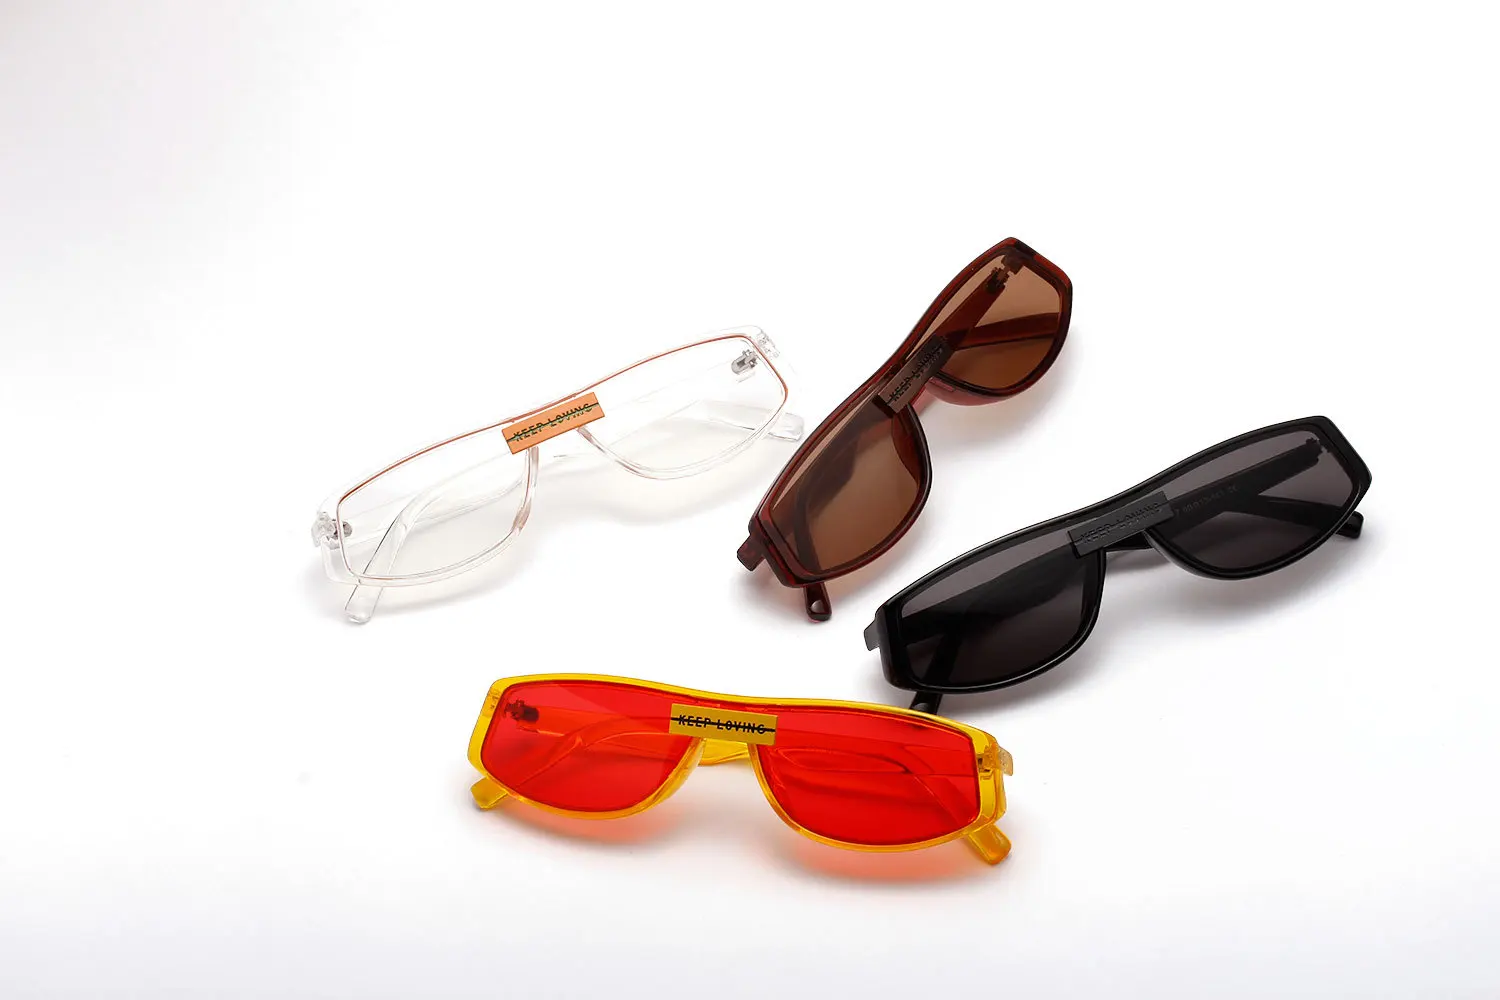 Ruosyling UV 400 солнцезащитные очки для женщин квадратные винтажные пляжные солнцезащитные очки для девочек модная оранжевая оправа Красные линзы темные очки